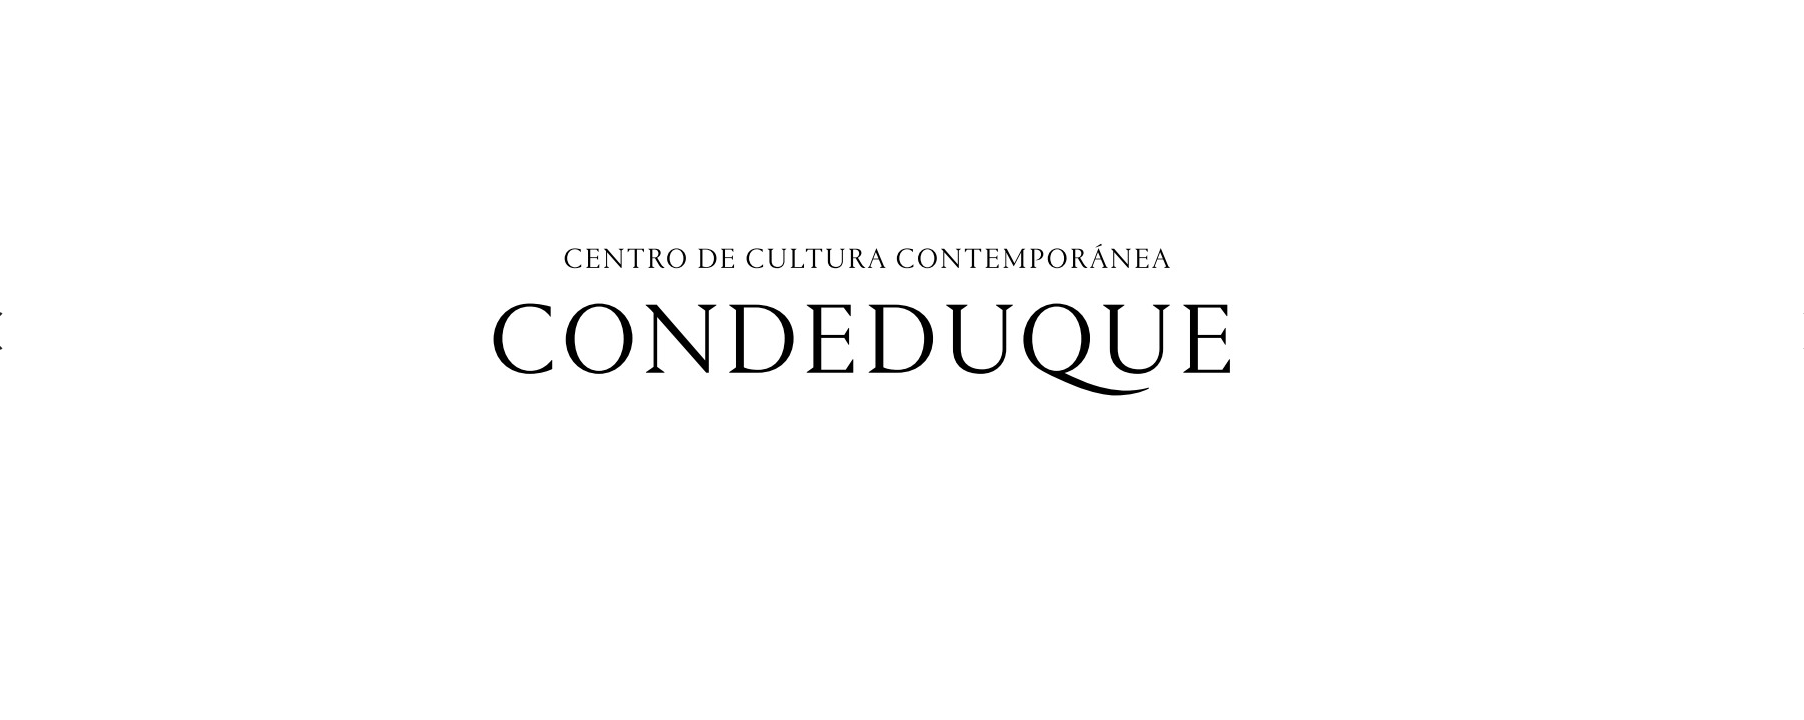 Teatro Condeduque